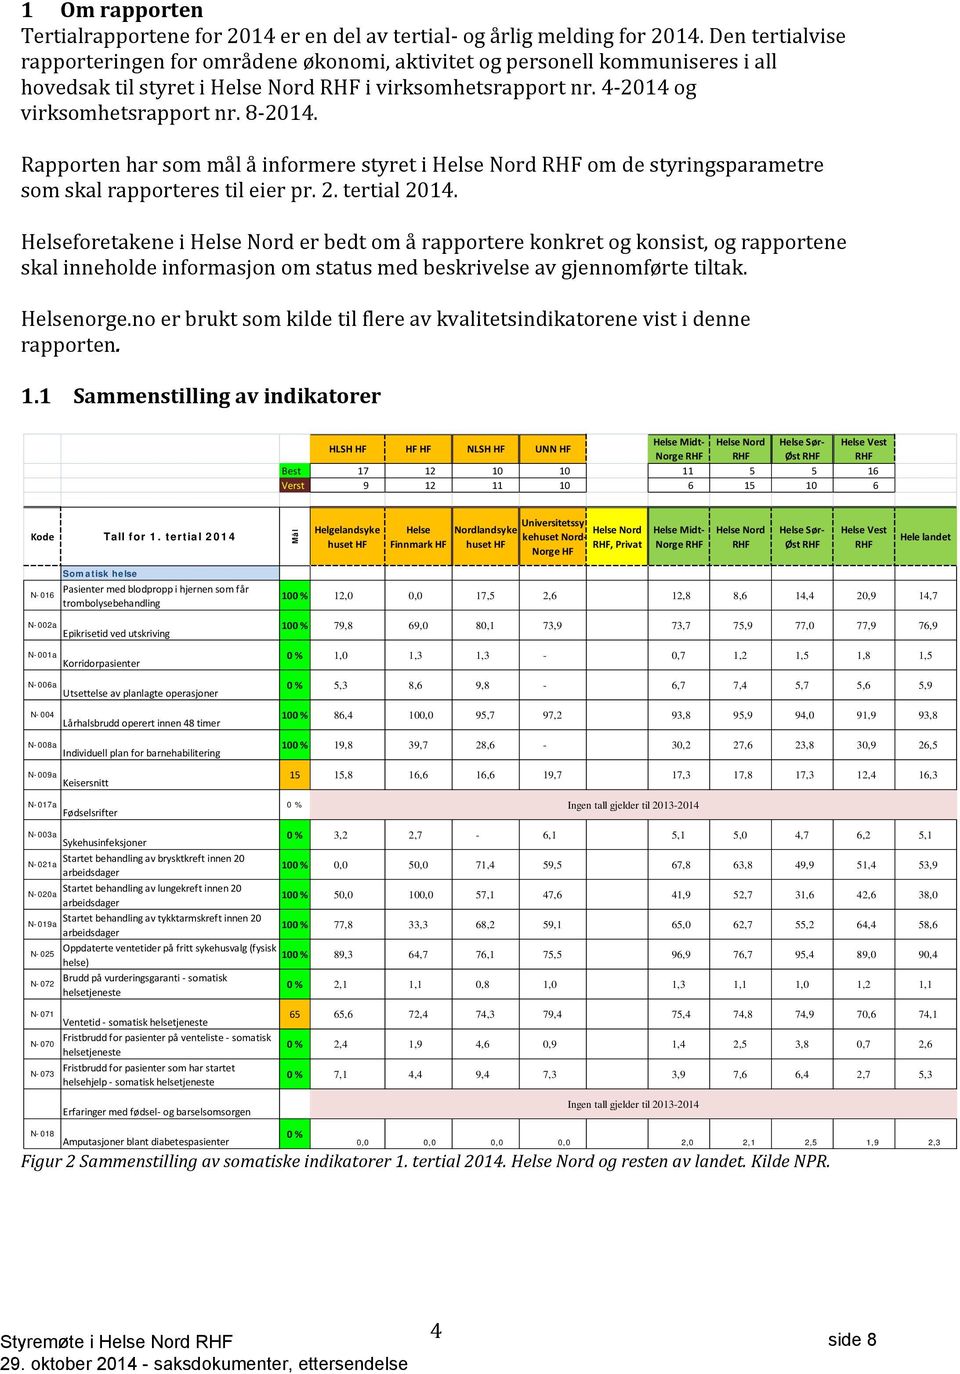 Rapporten har som mål å informere styret i Helse Nord RHF om de styringsparametre som skal rapporteres til eier pr. 2. tertial 2014.